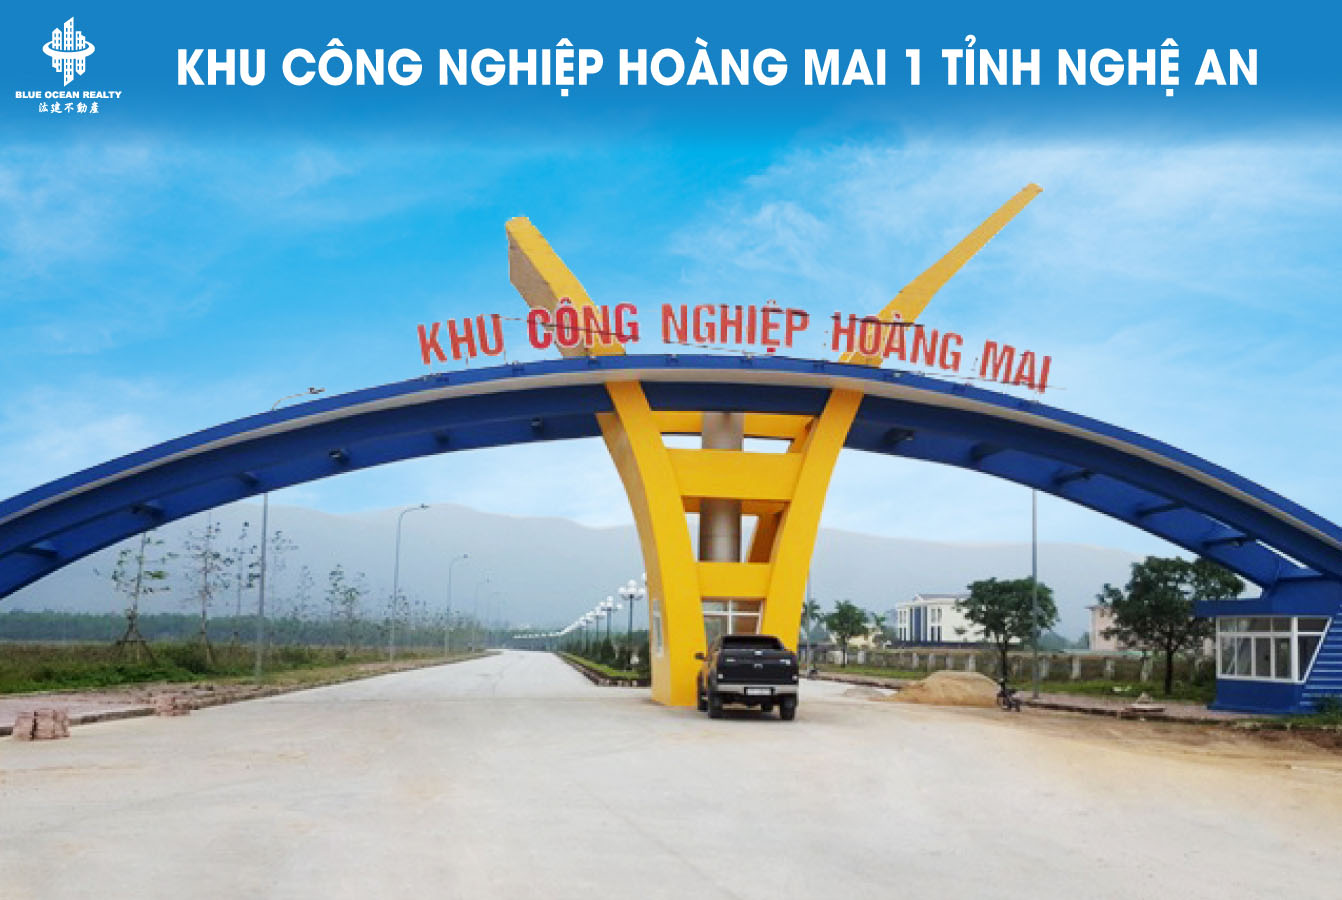 Khu công nghiệp Hoàng Mai 1 tỉnh Nghệ An